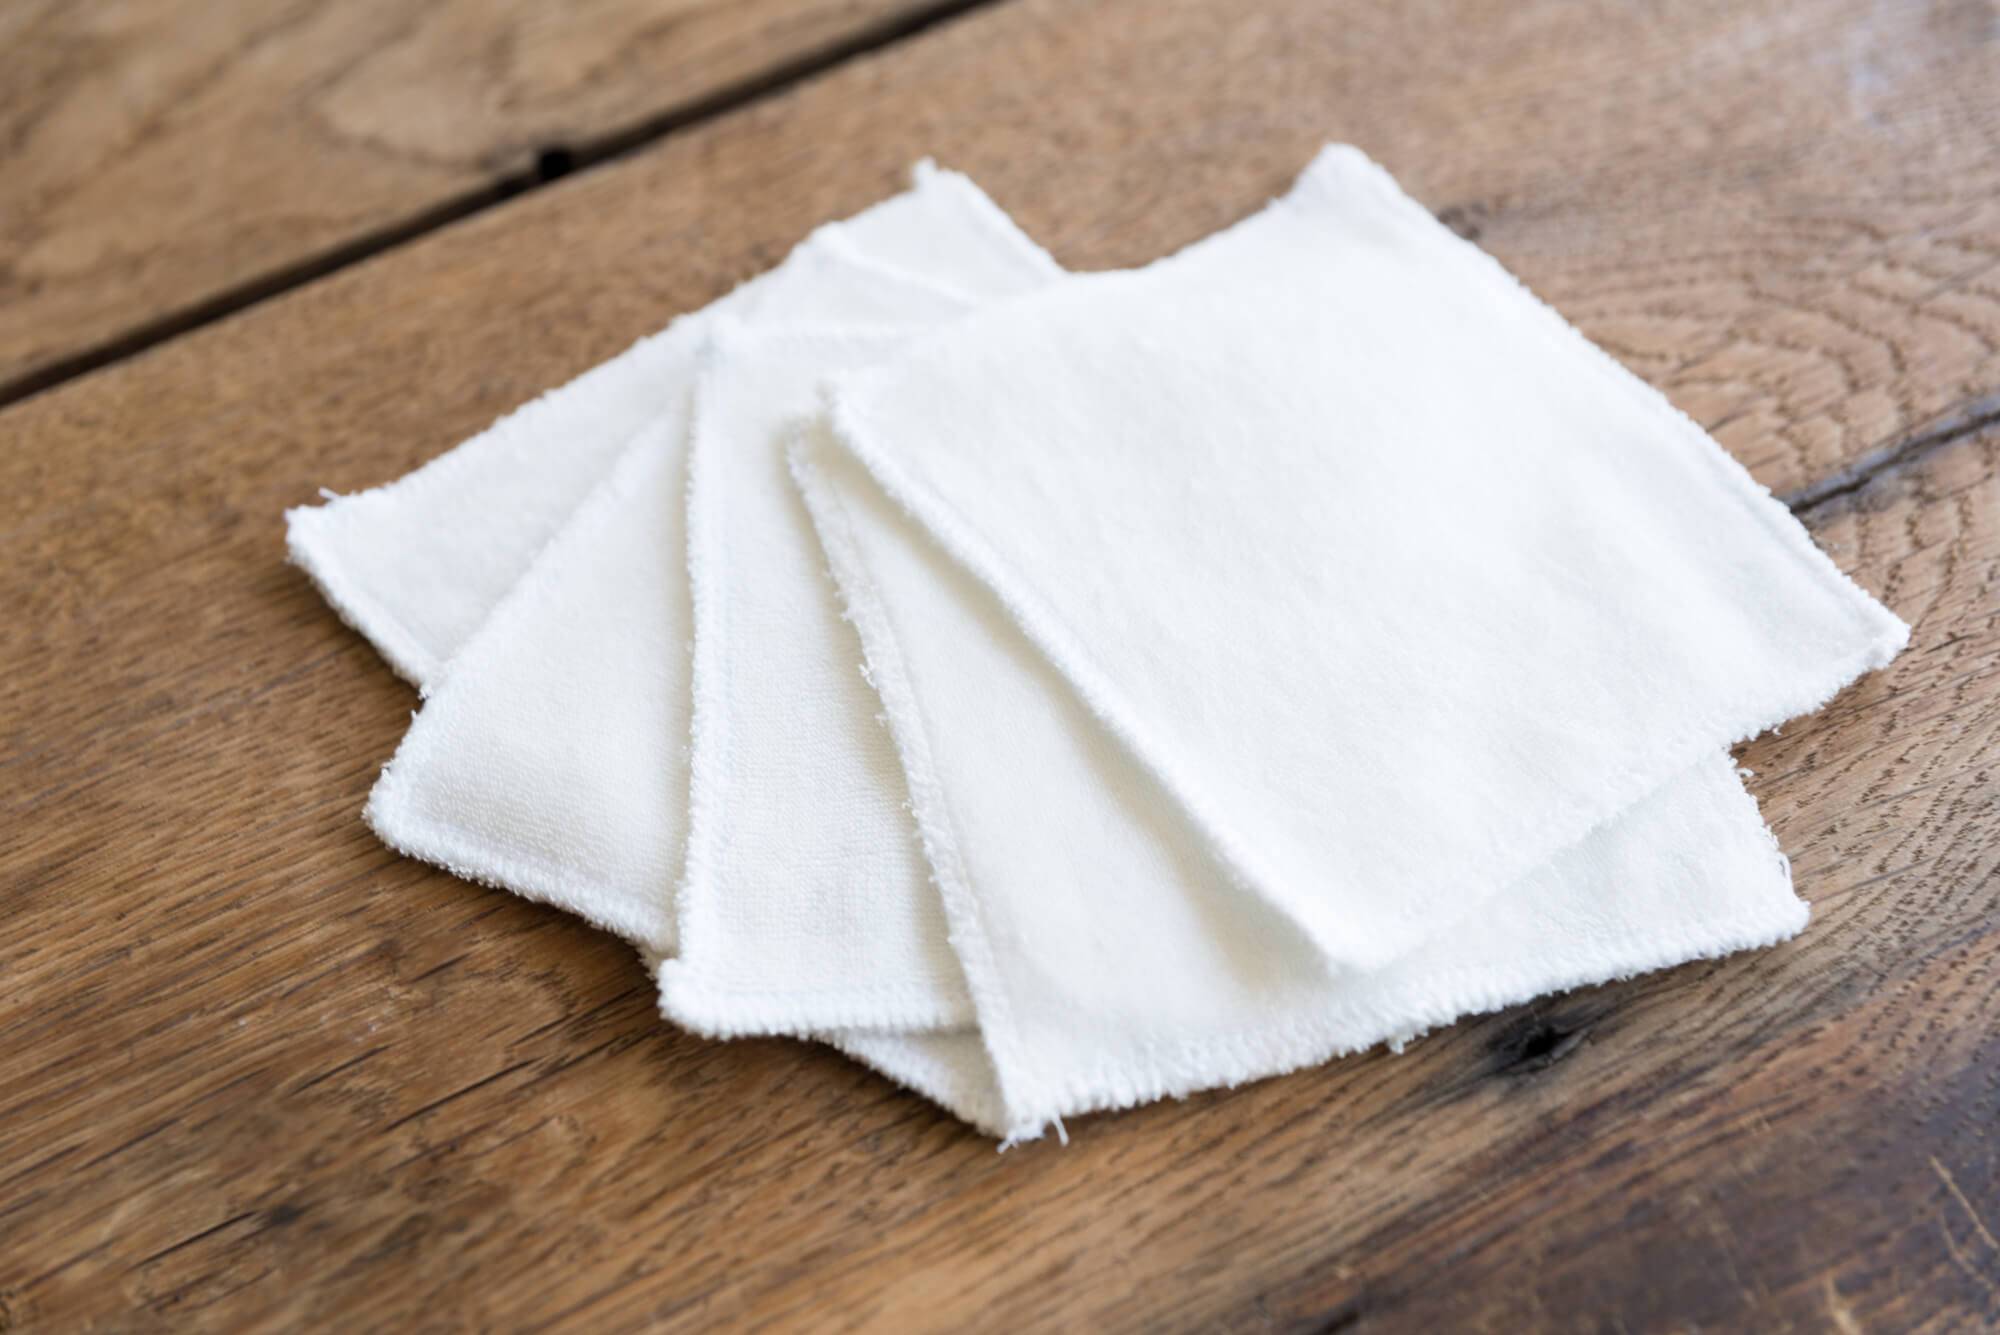 Les bons gestes Santé : coton ou lingettes pour nettoyer votre